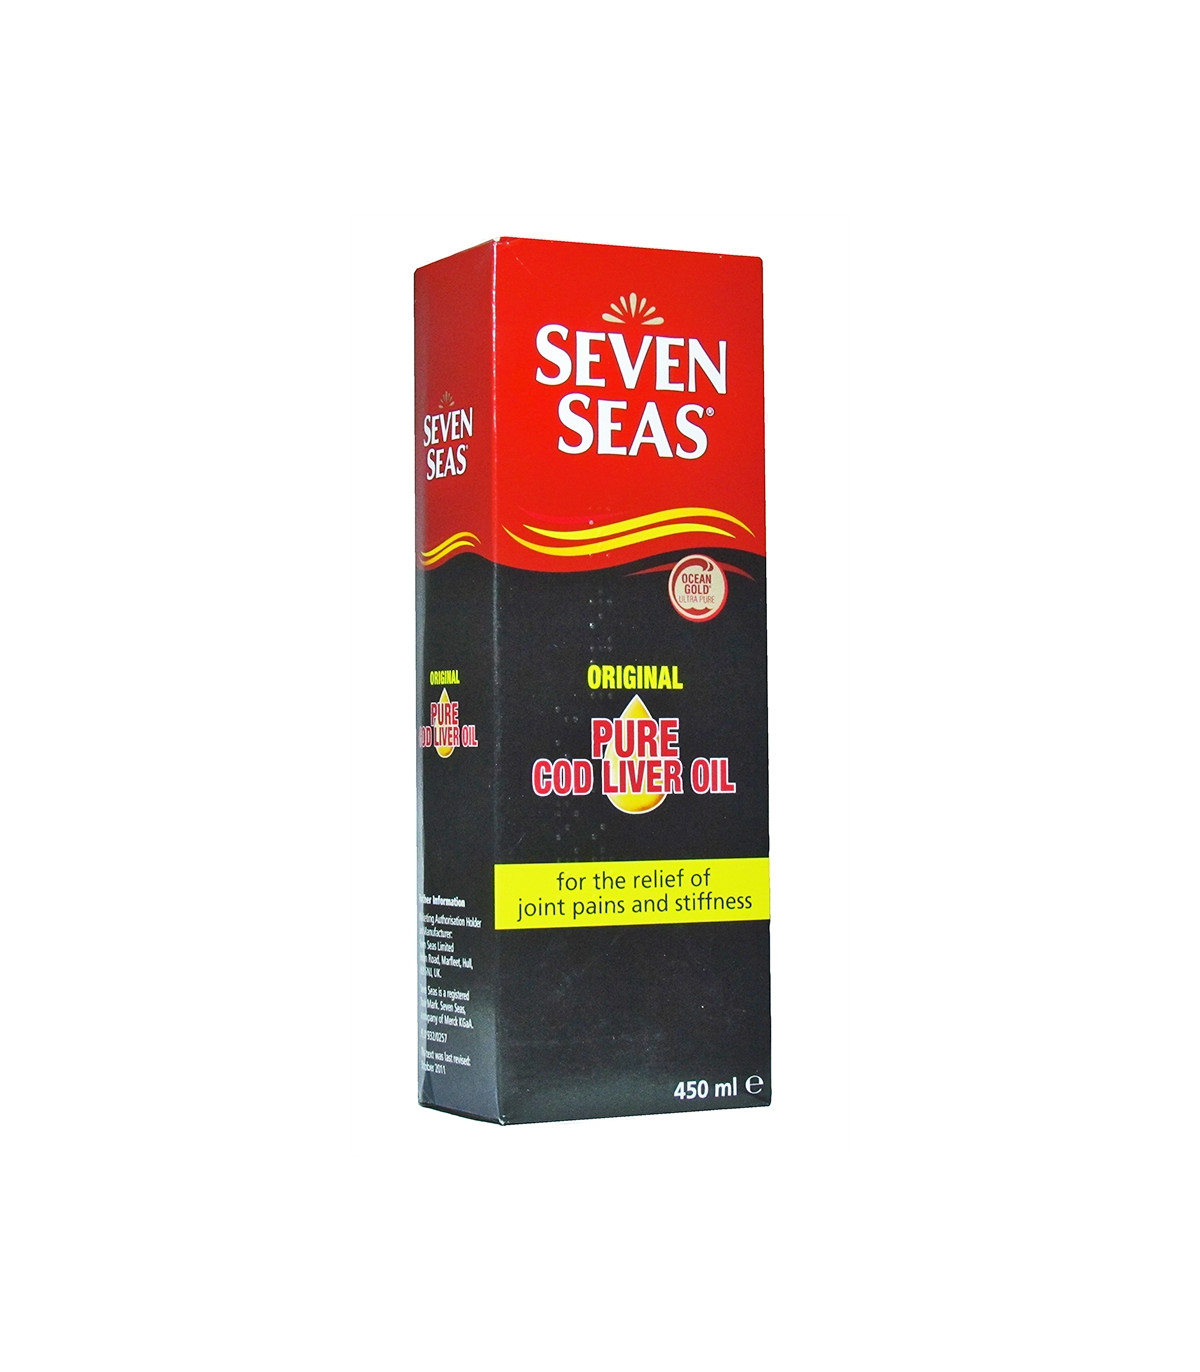 Seven Seas Original Pure Cod Liver Oil – 450ml